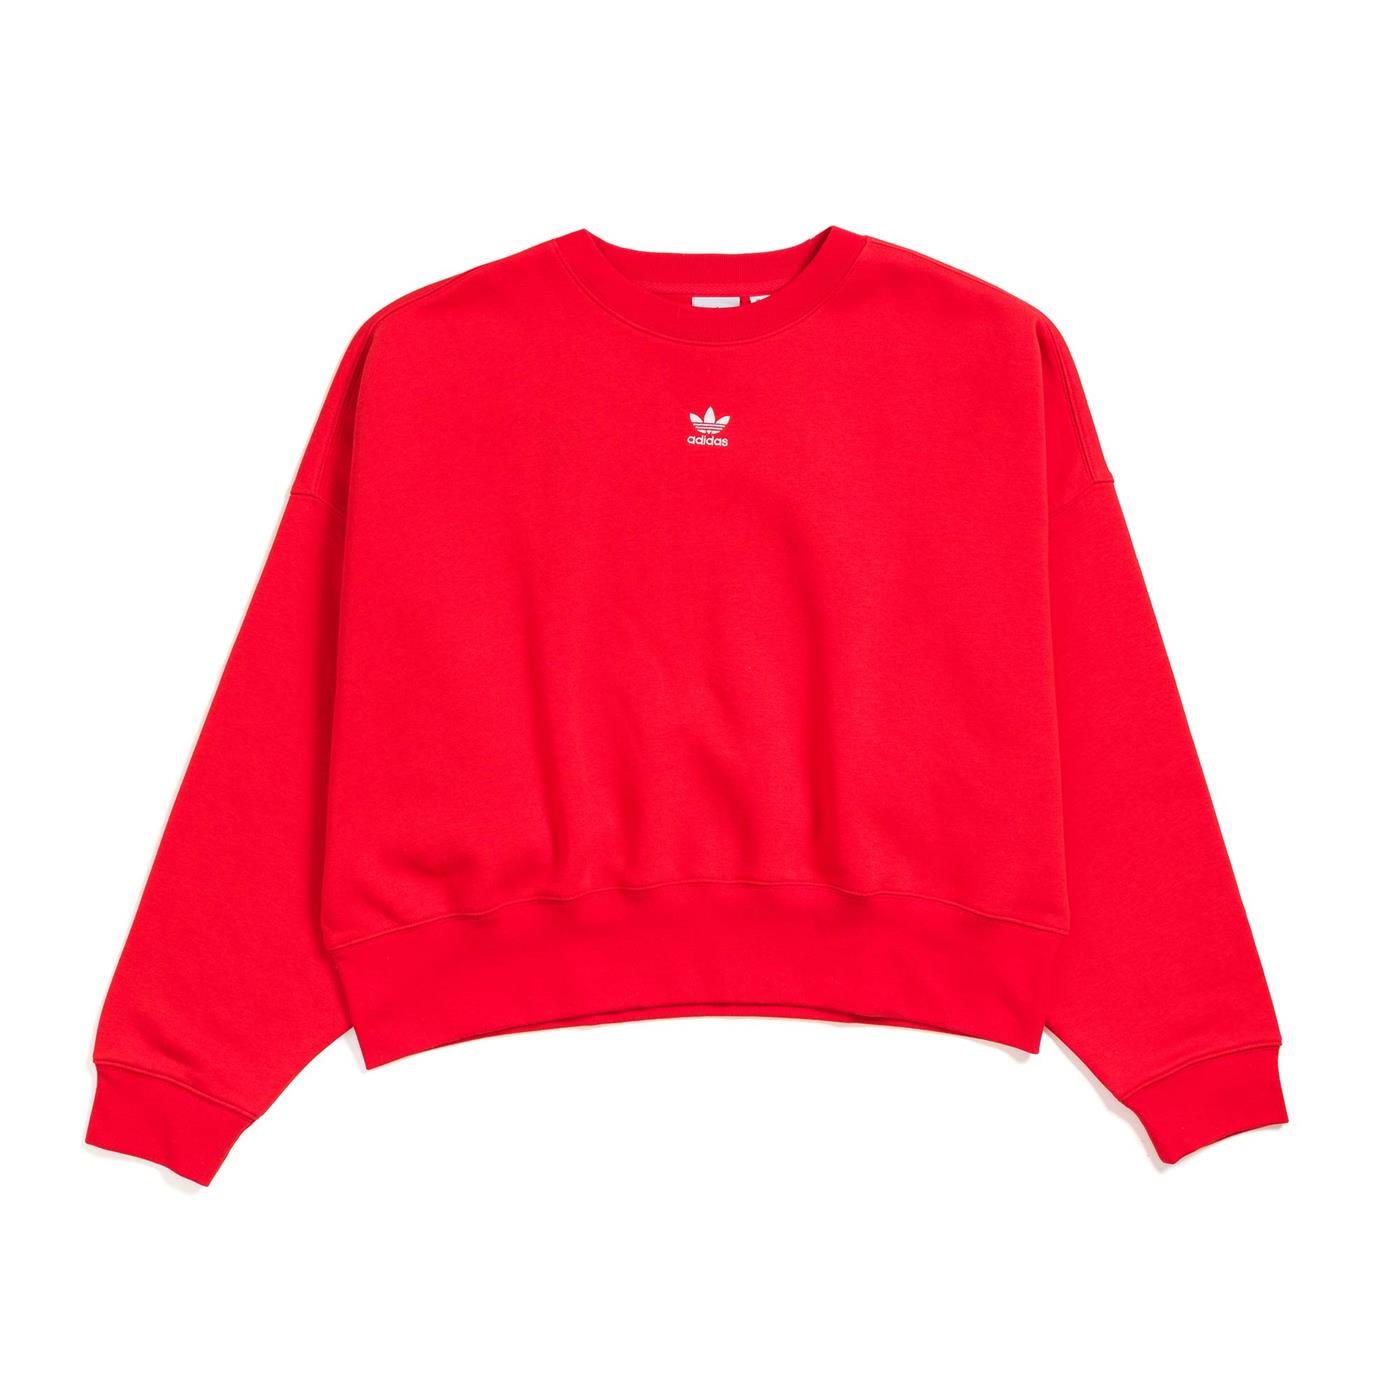 TrustyShops | Suéter Sweatshirt Rojo de Mujer | HF7479 | adidas art s81992 2018 release form template free